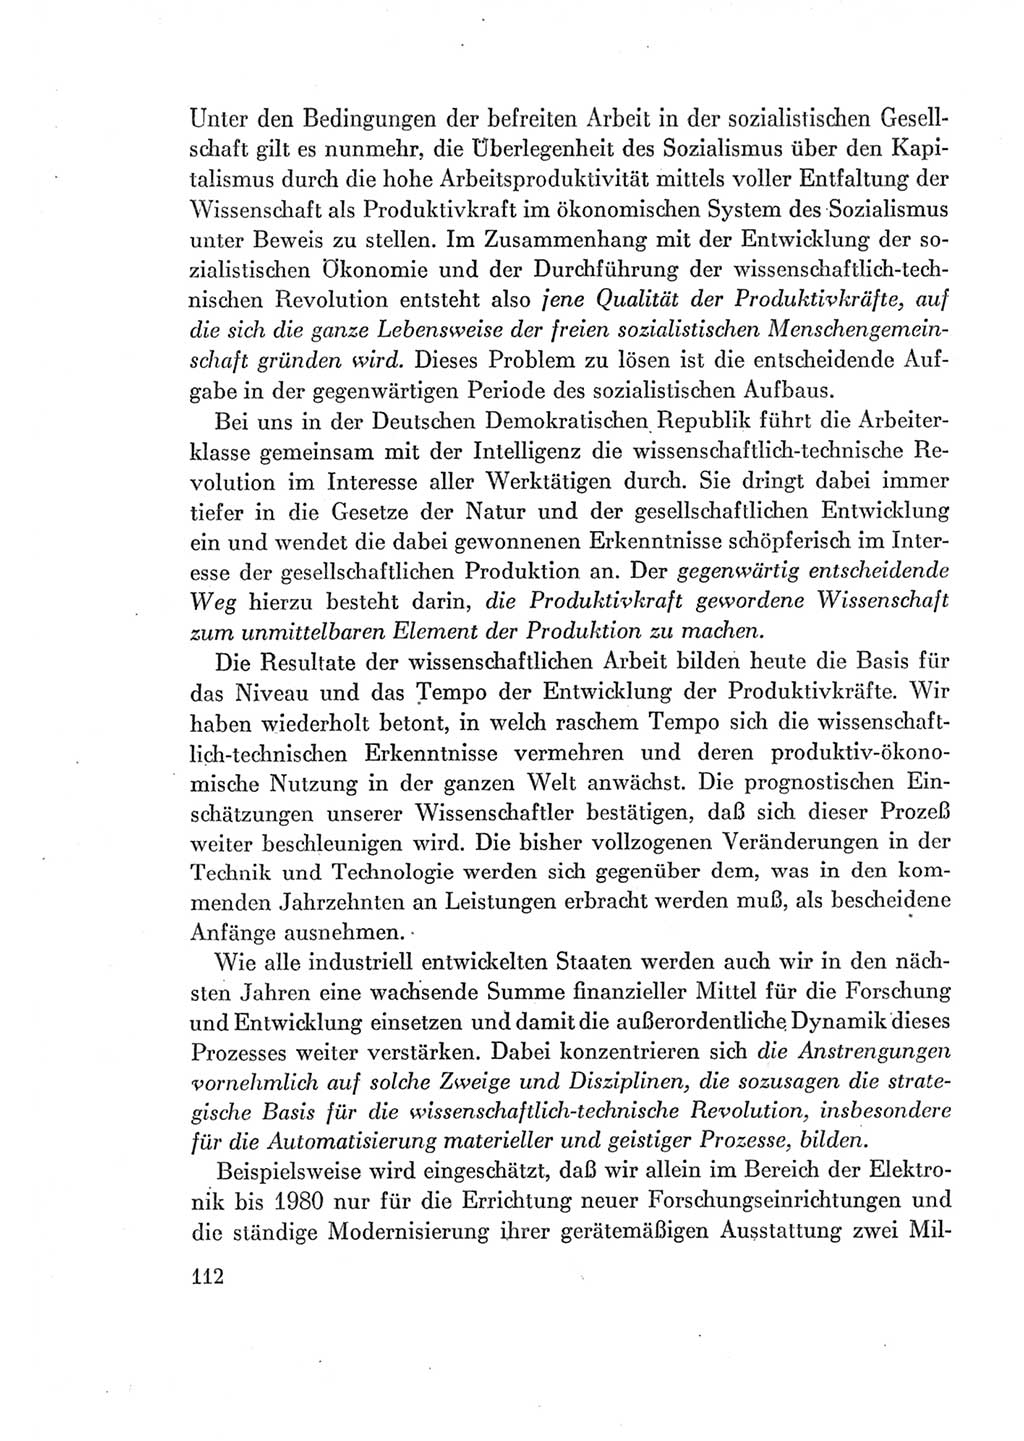 Protokoll der Verhandlungen des Ⅶ. Parteitages der Sozialistischen Einheitspartei Deutschlands (SED) [Deutsche Demokratische Republik (DDR)] 1967, Band Ⅰ, Seite 112 (Prot. Verh. Ⅶ. PT SED DDR 1967, Bd. Ⅰ, S. 112)